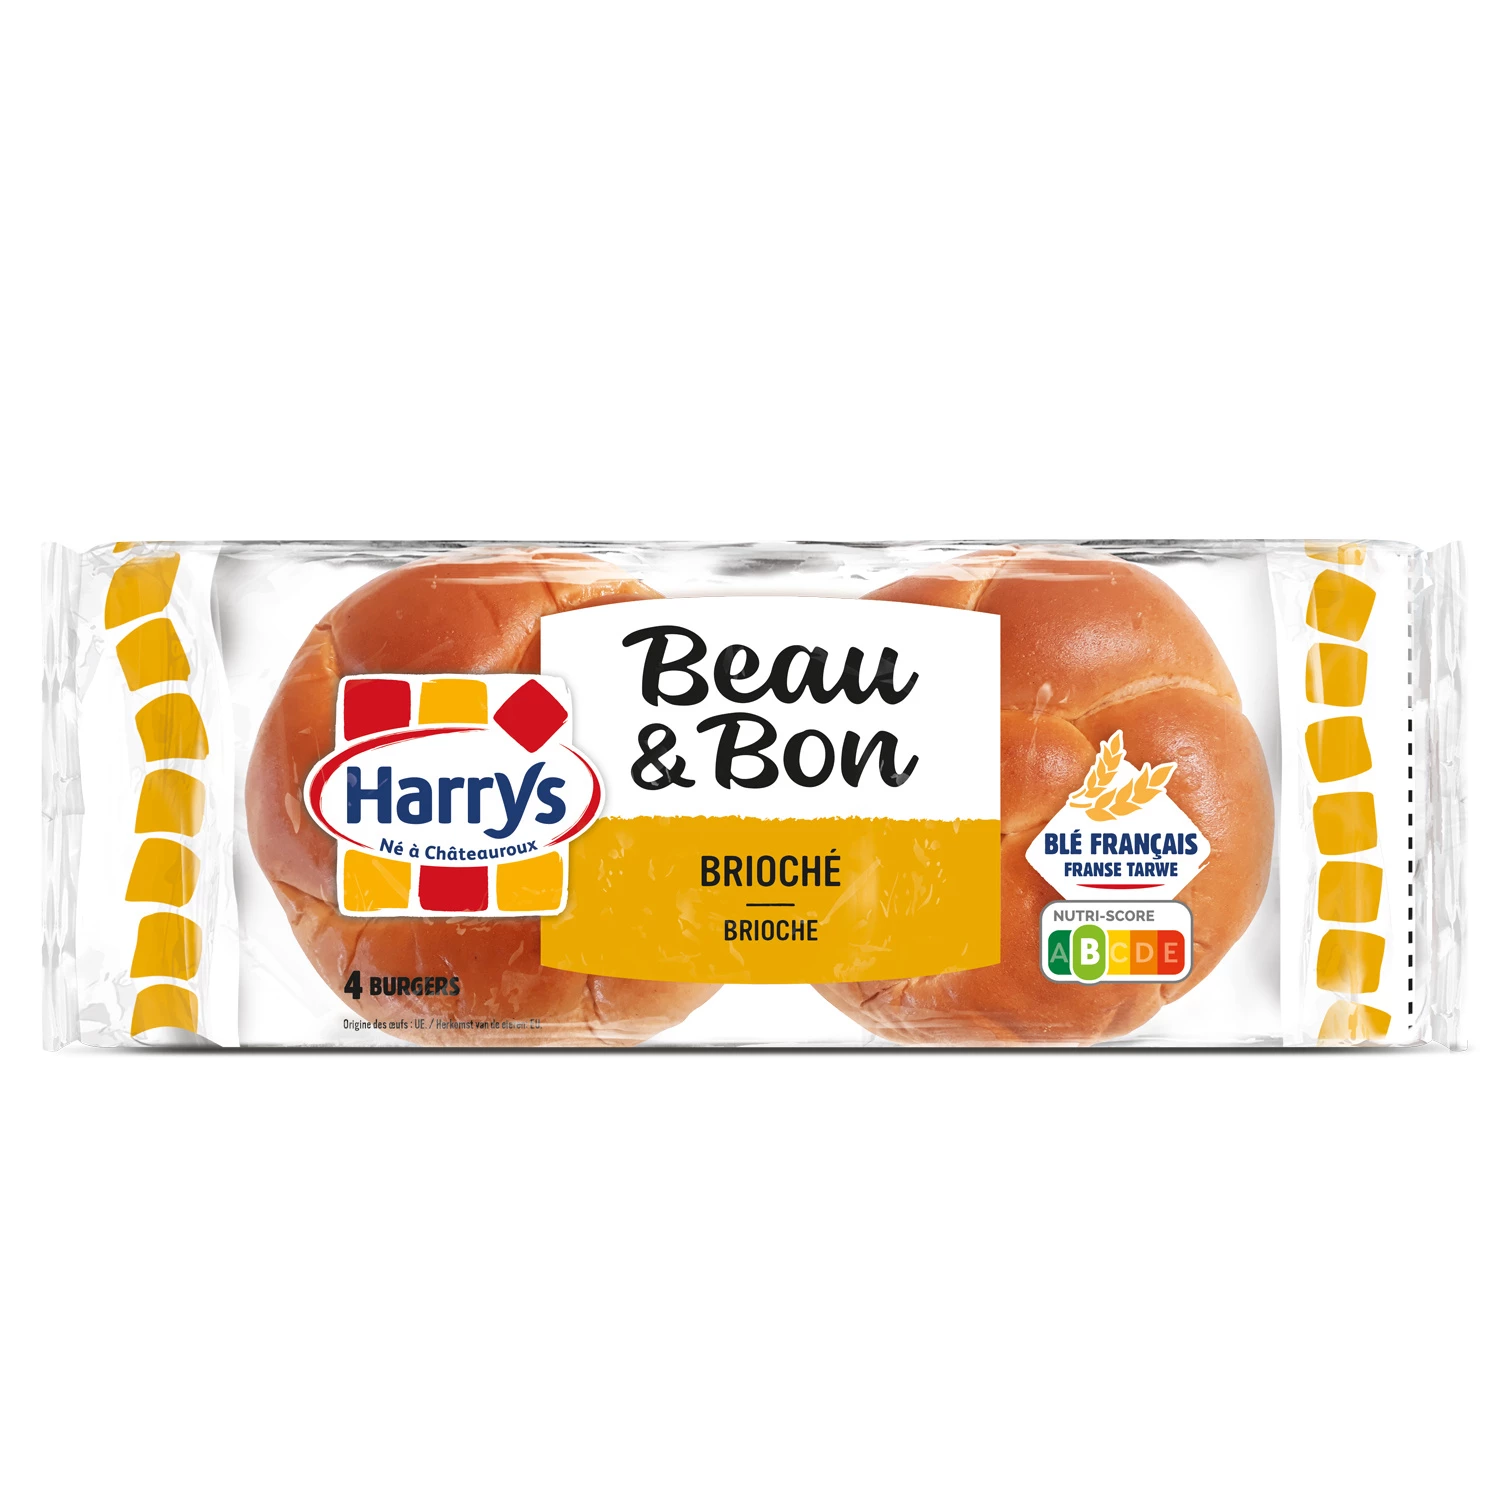 汉堡奶油蛋卷自然 300g - HARRY'S